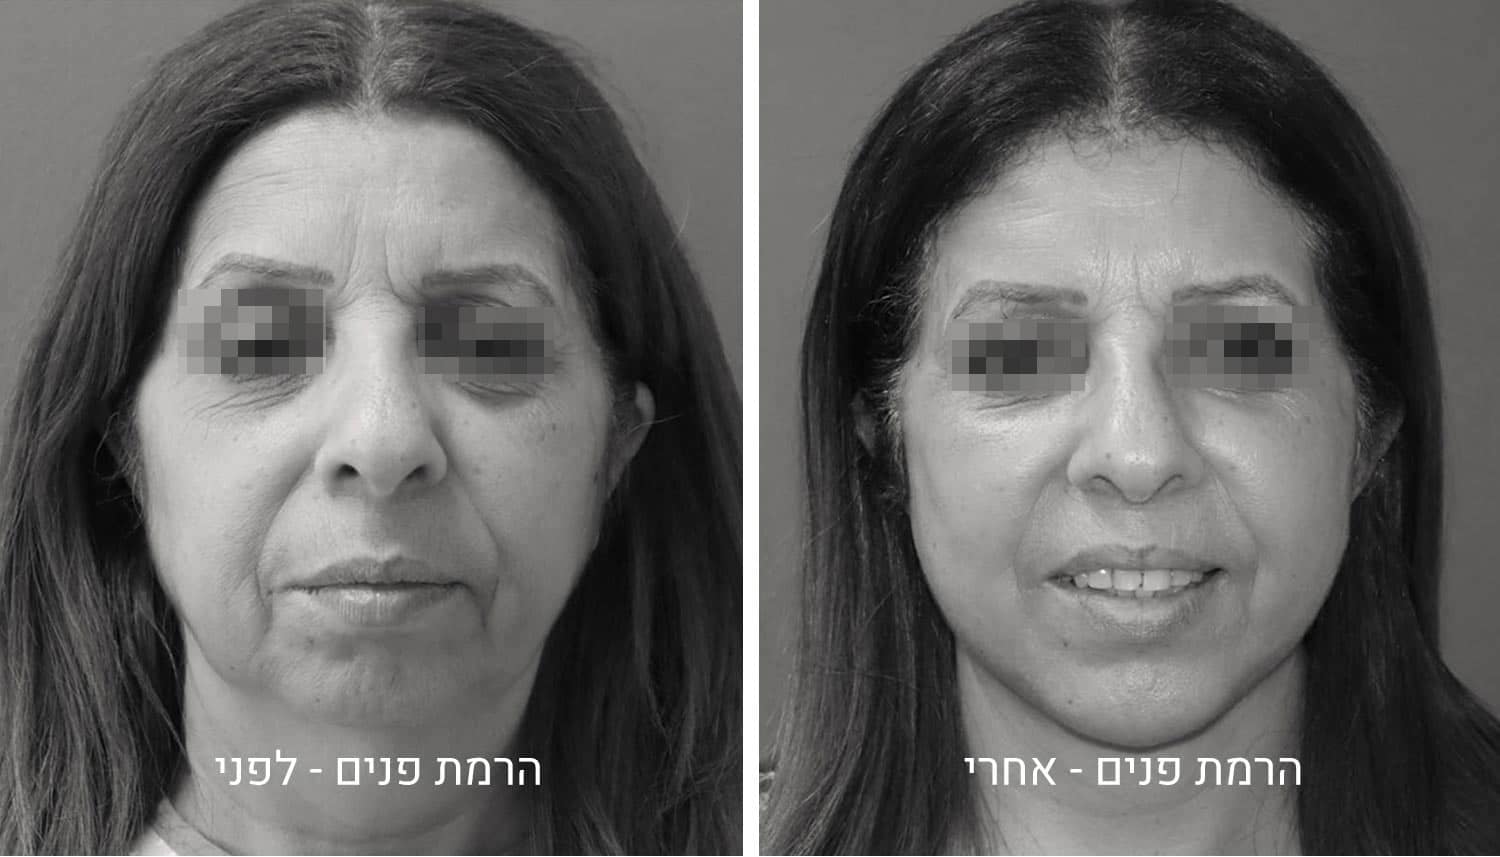 הרמת פנים תמונות לפני ואחרי גיל נרדיני